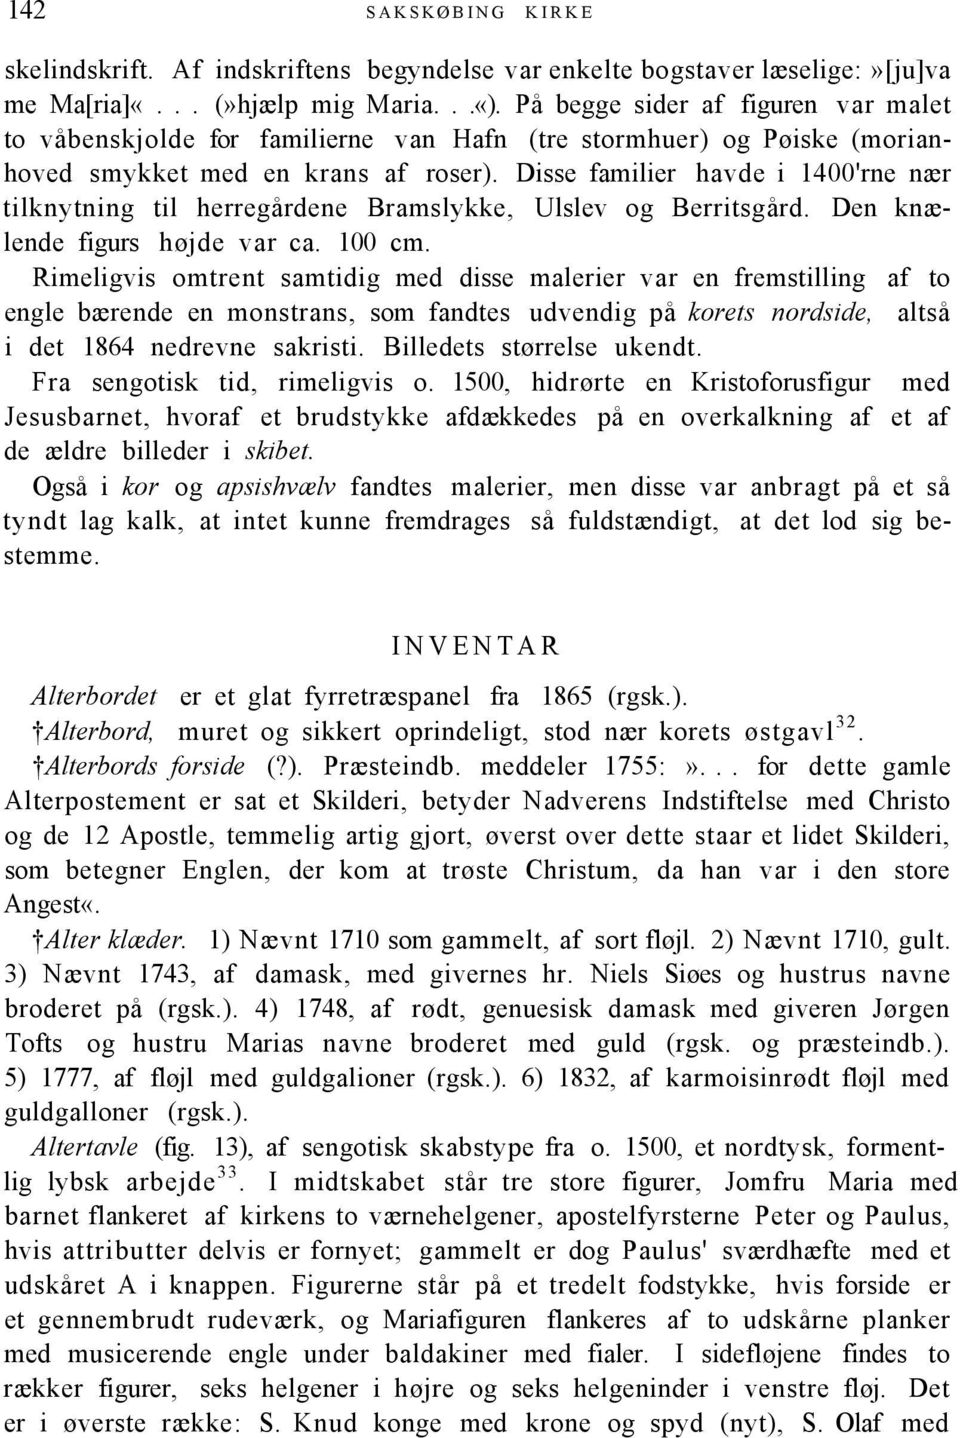 Disse familier havde i 1400'rne nær tilknytning til herregårdene Bramslykke, Ulslev og Berritsgård. Den knælende figurs højde var ca. 100 cm.